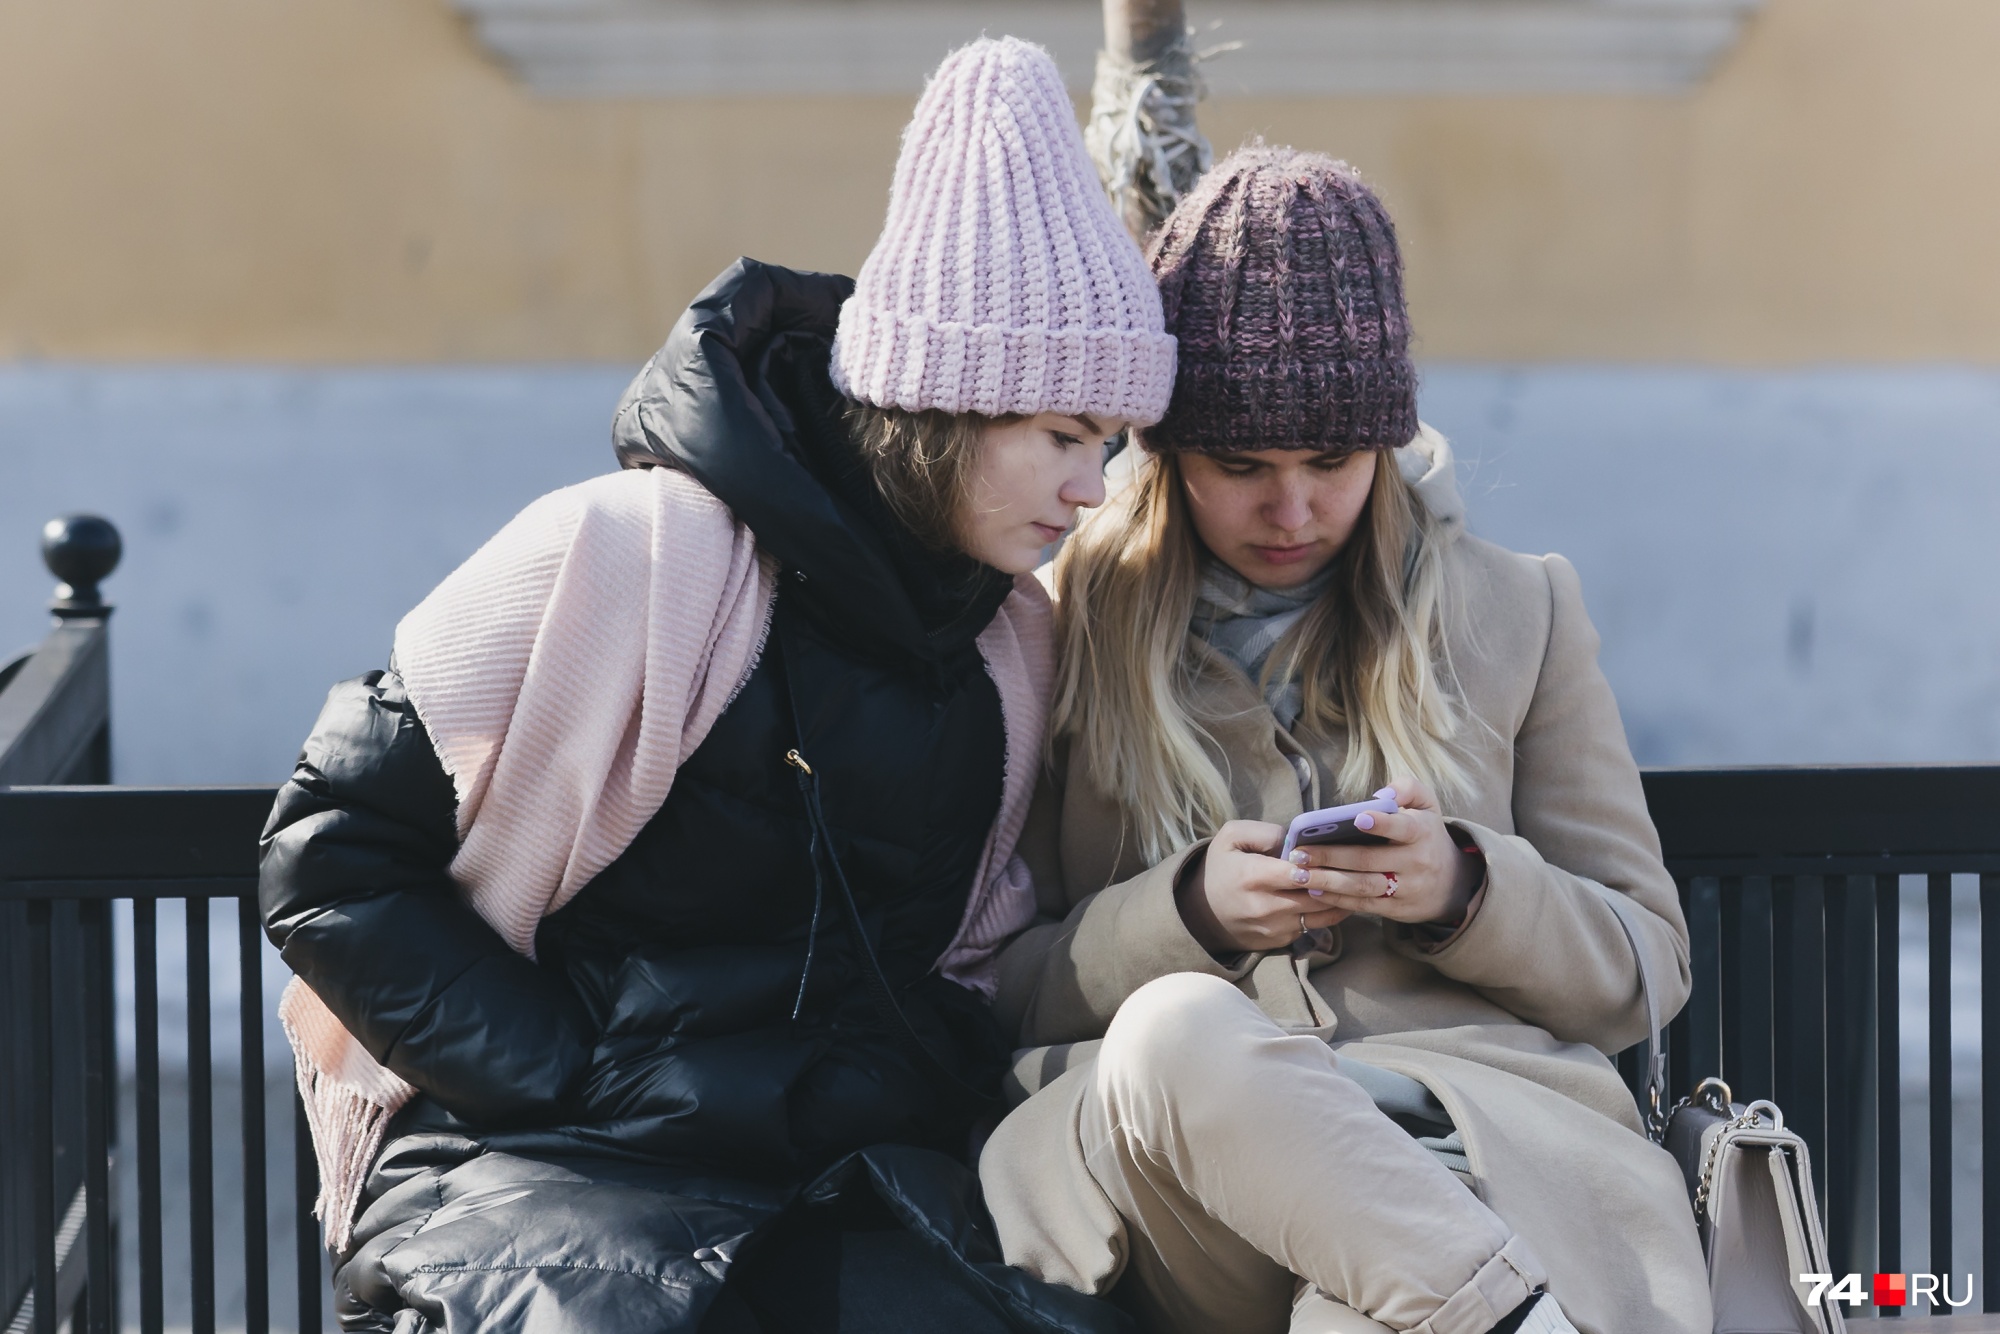 Мобильный интернет — только для богатых? Как отмена безлимита скажется на расходах россиян